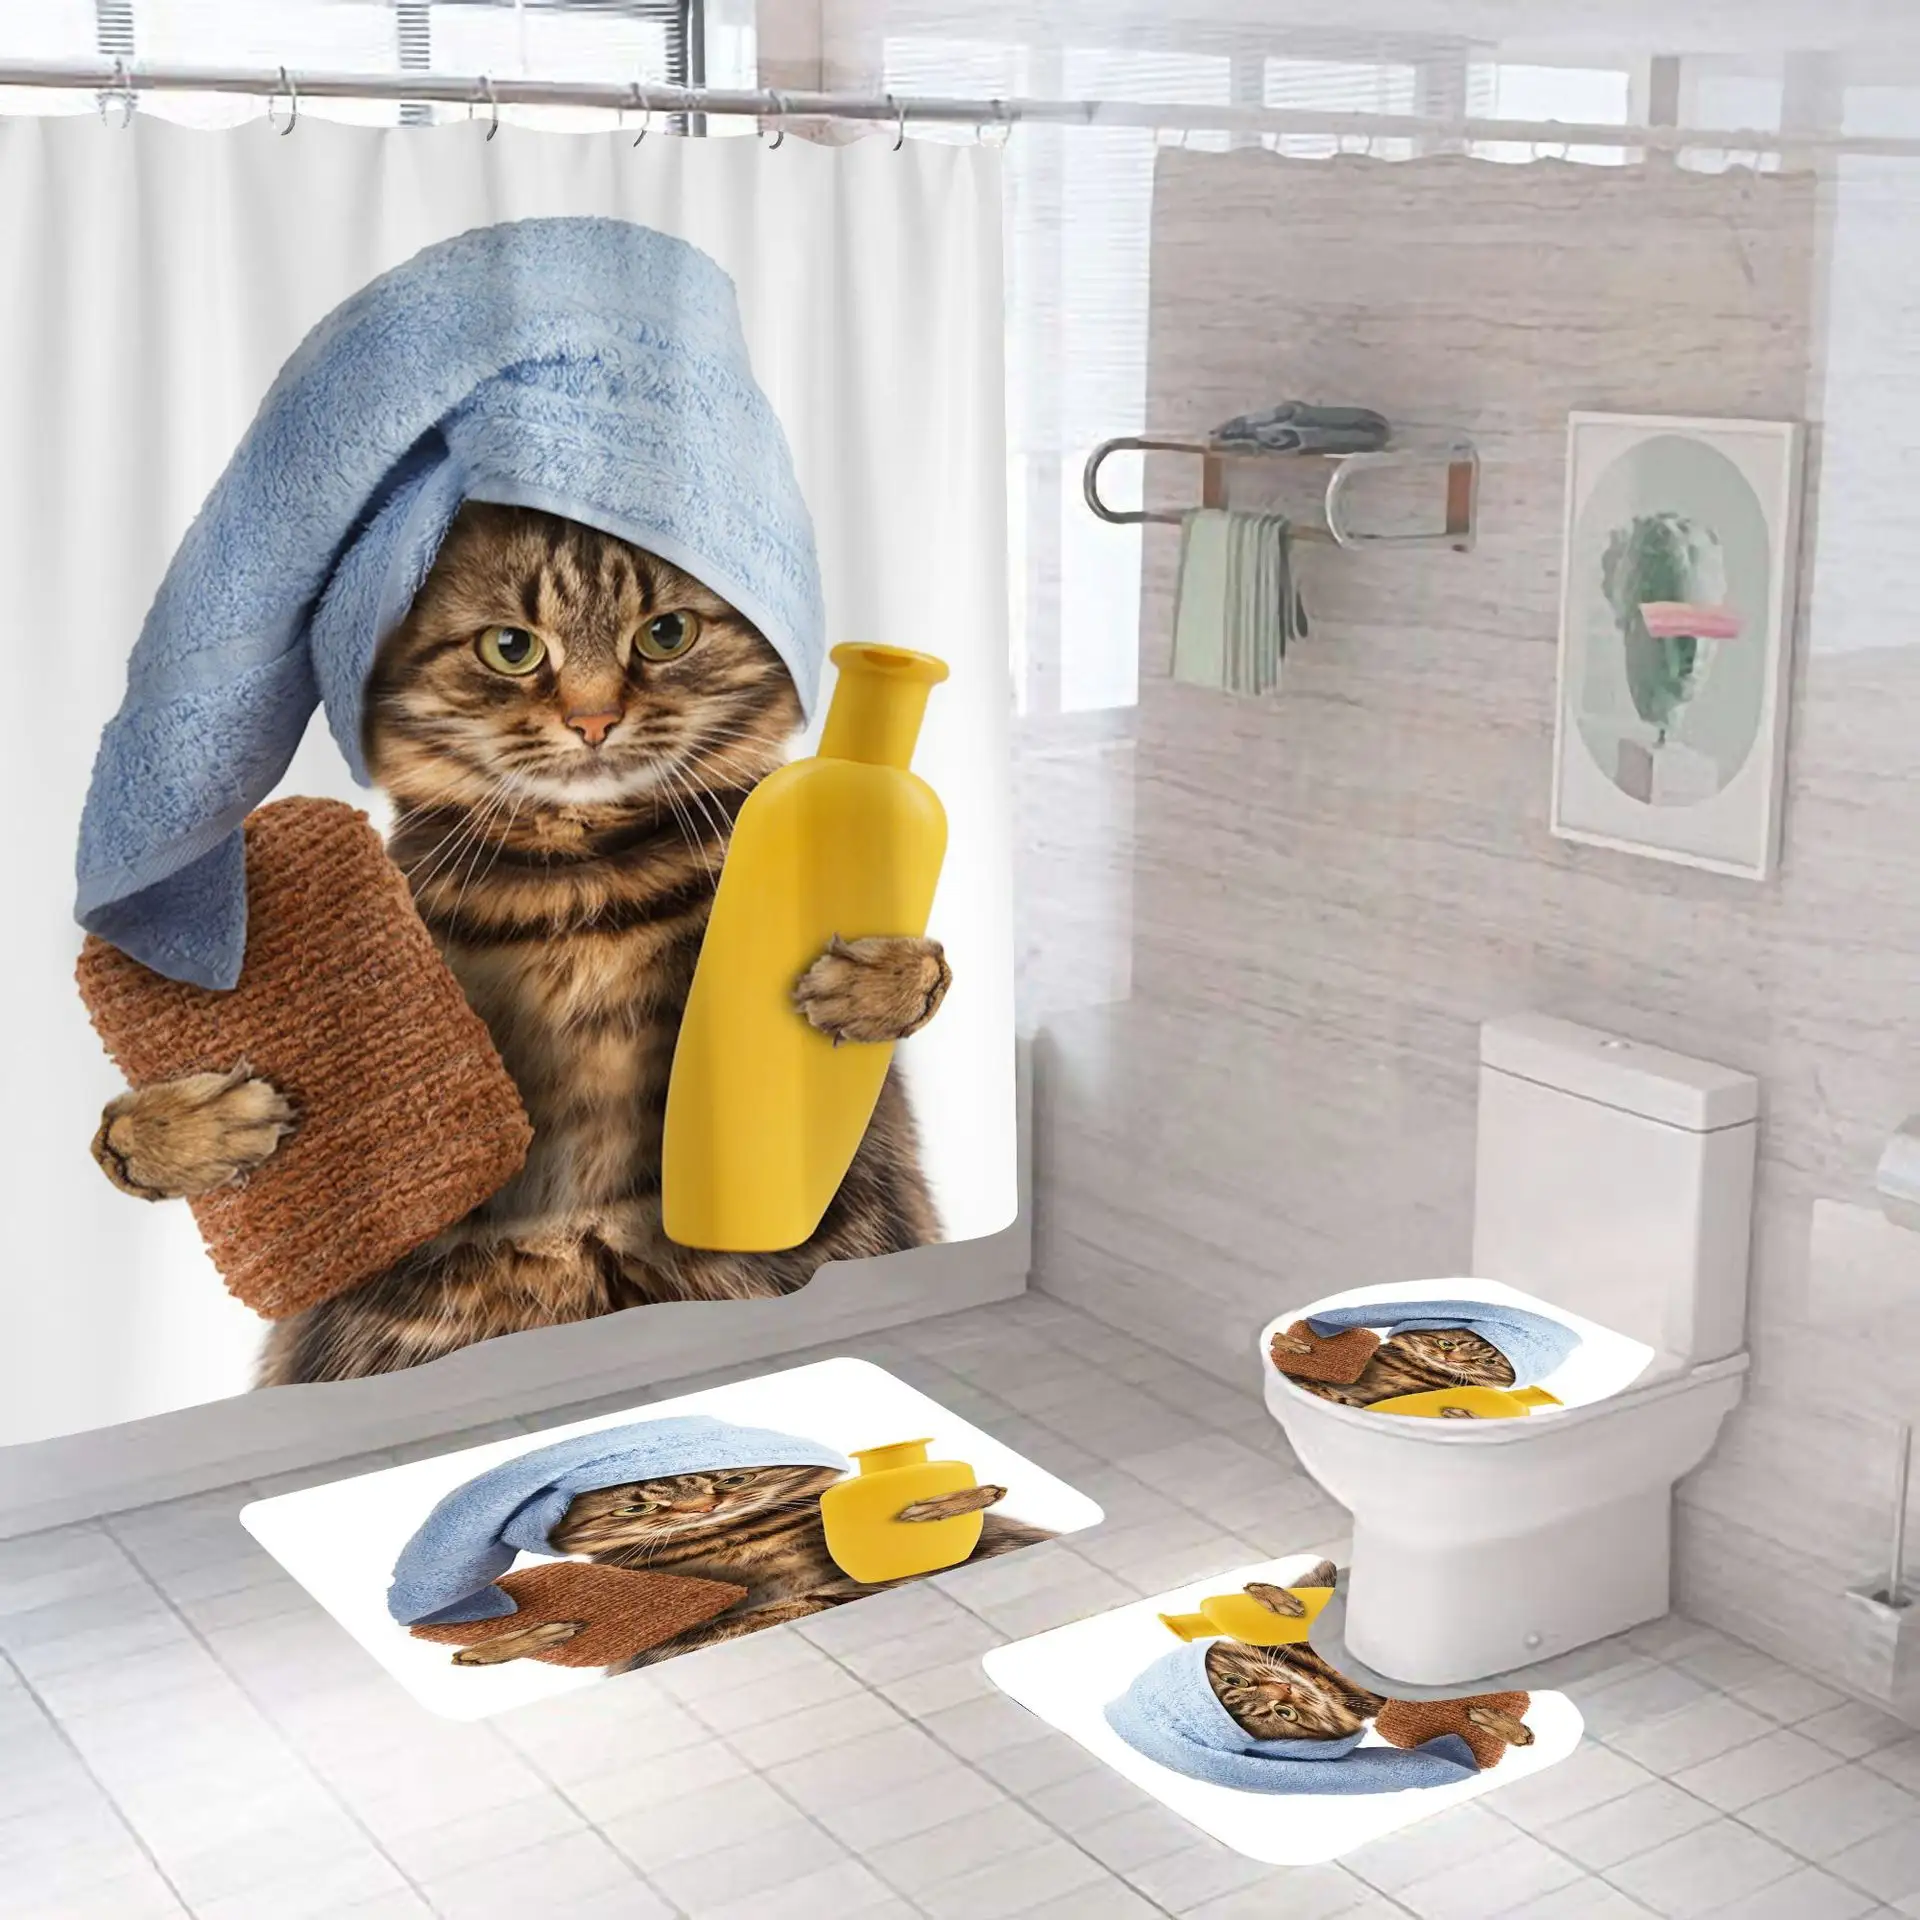 かわいい面白いシャワー猫カスタムカーテンデザインデジタルポリエステルモダンスタイルデジタルプリントバスルームシャワーカーテン